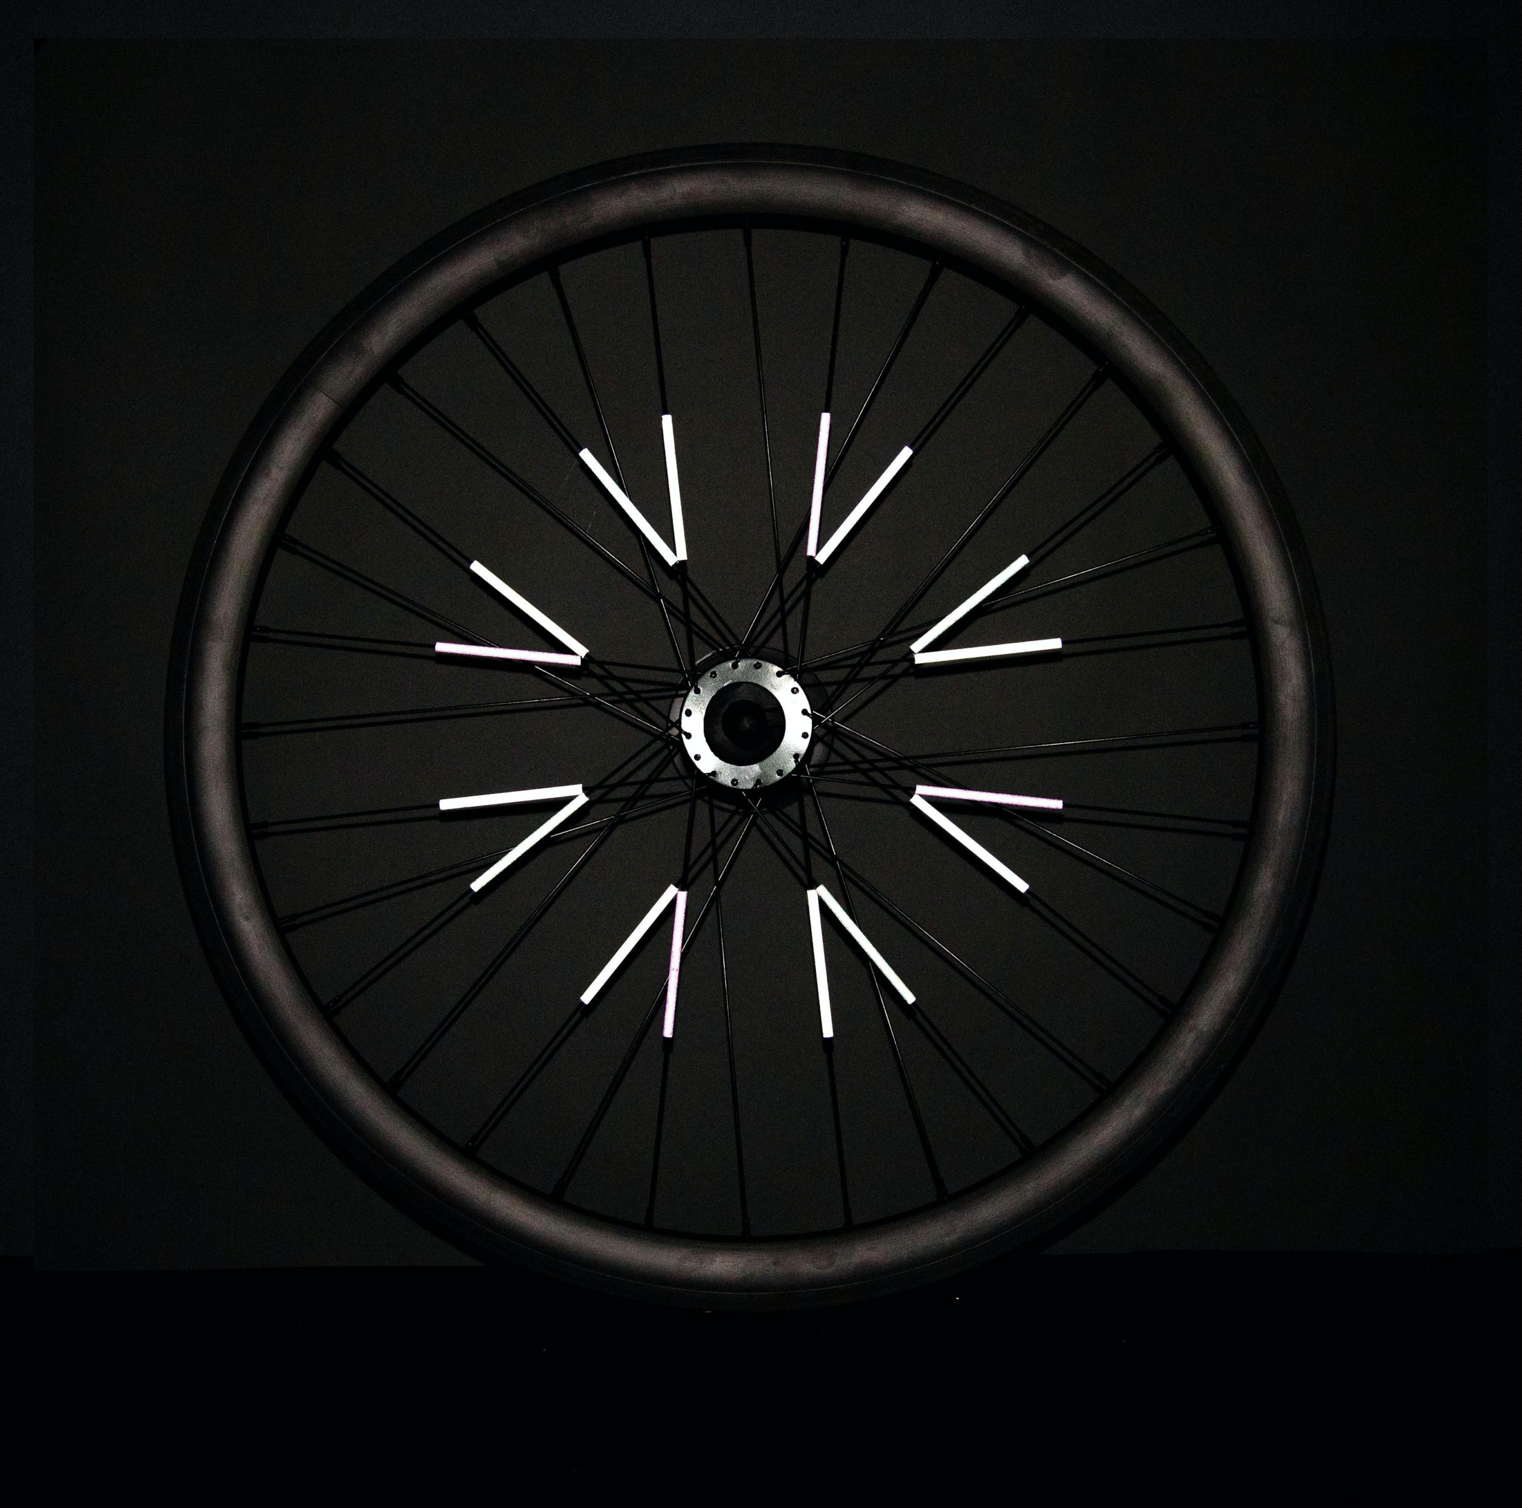 Reflecteurs pour rayons de vélo – poulettestore